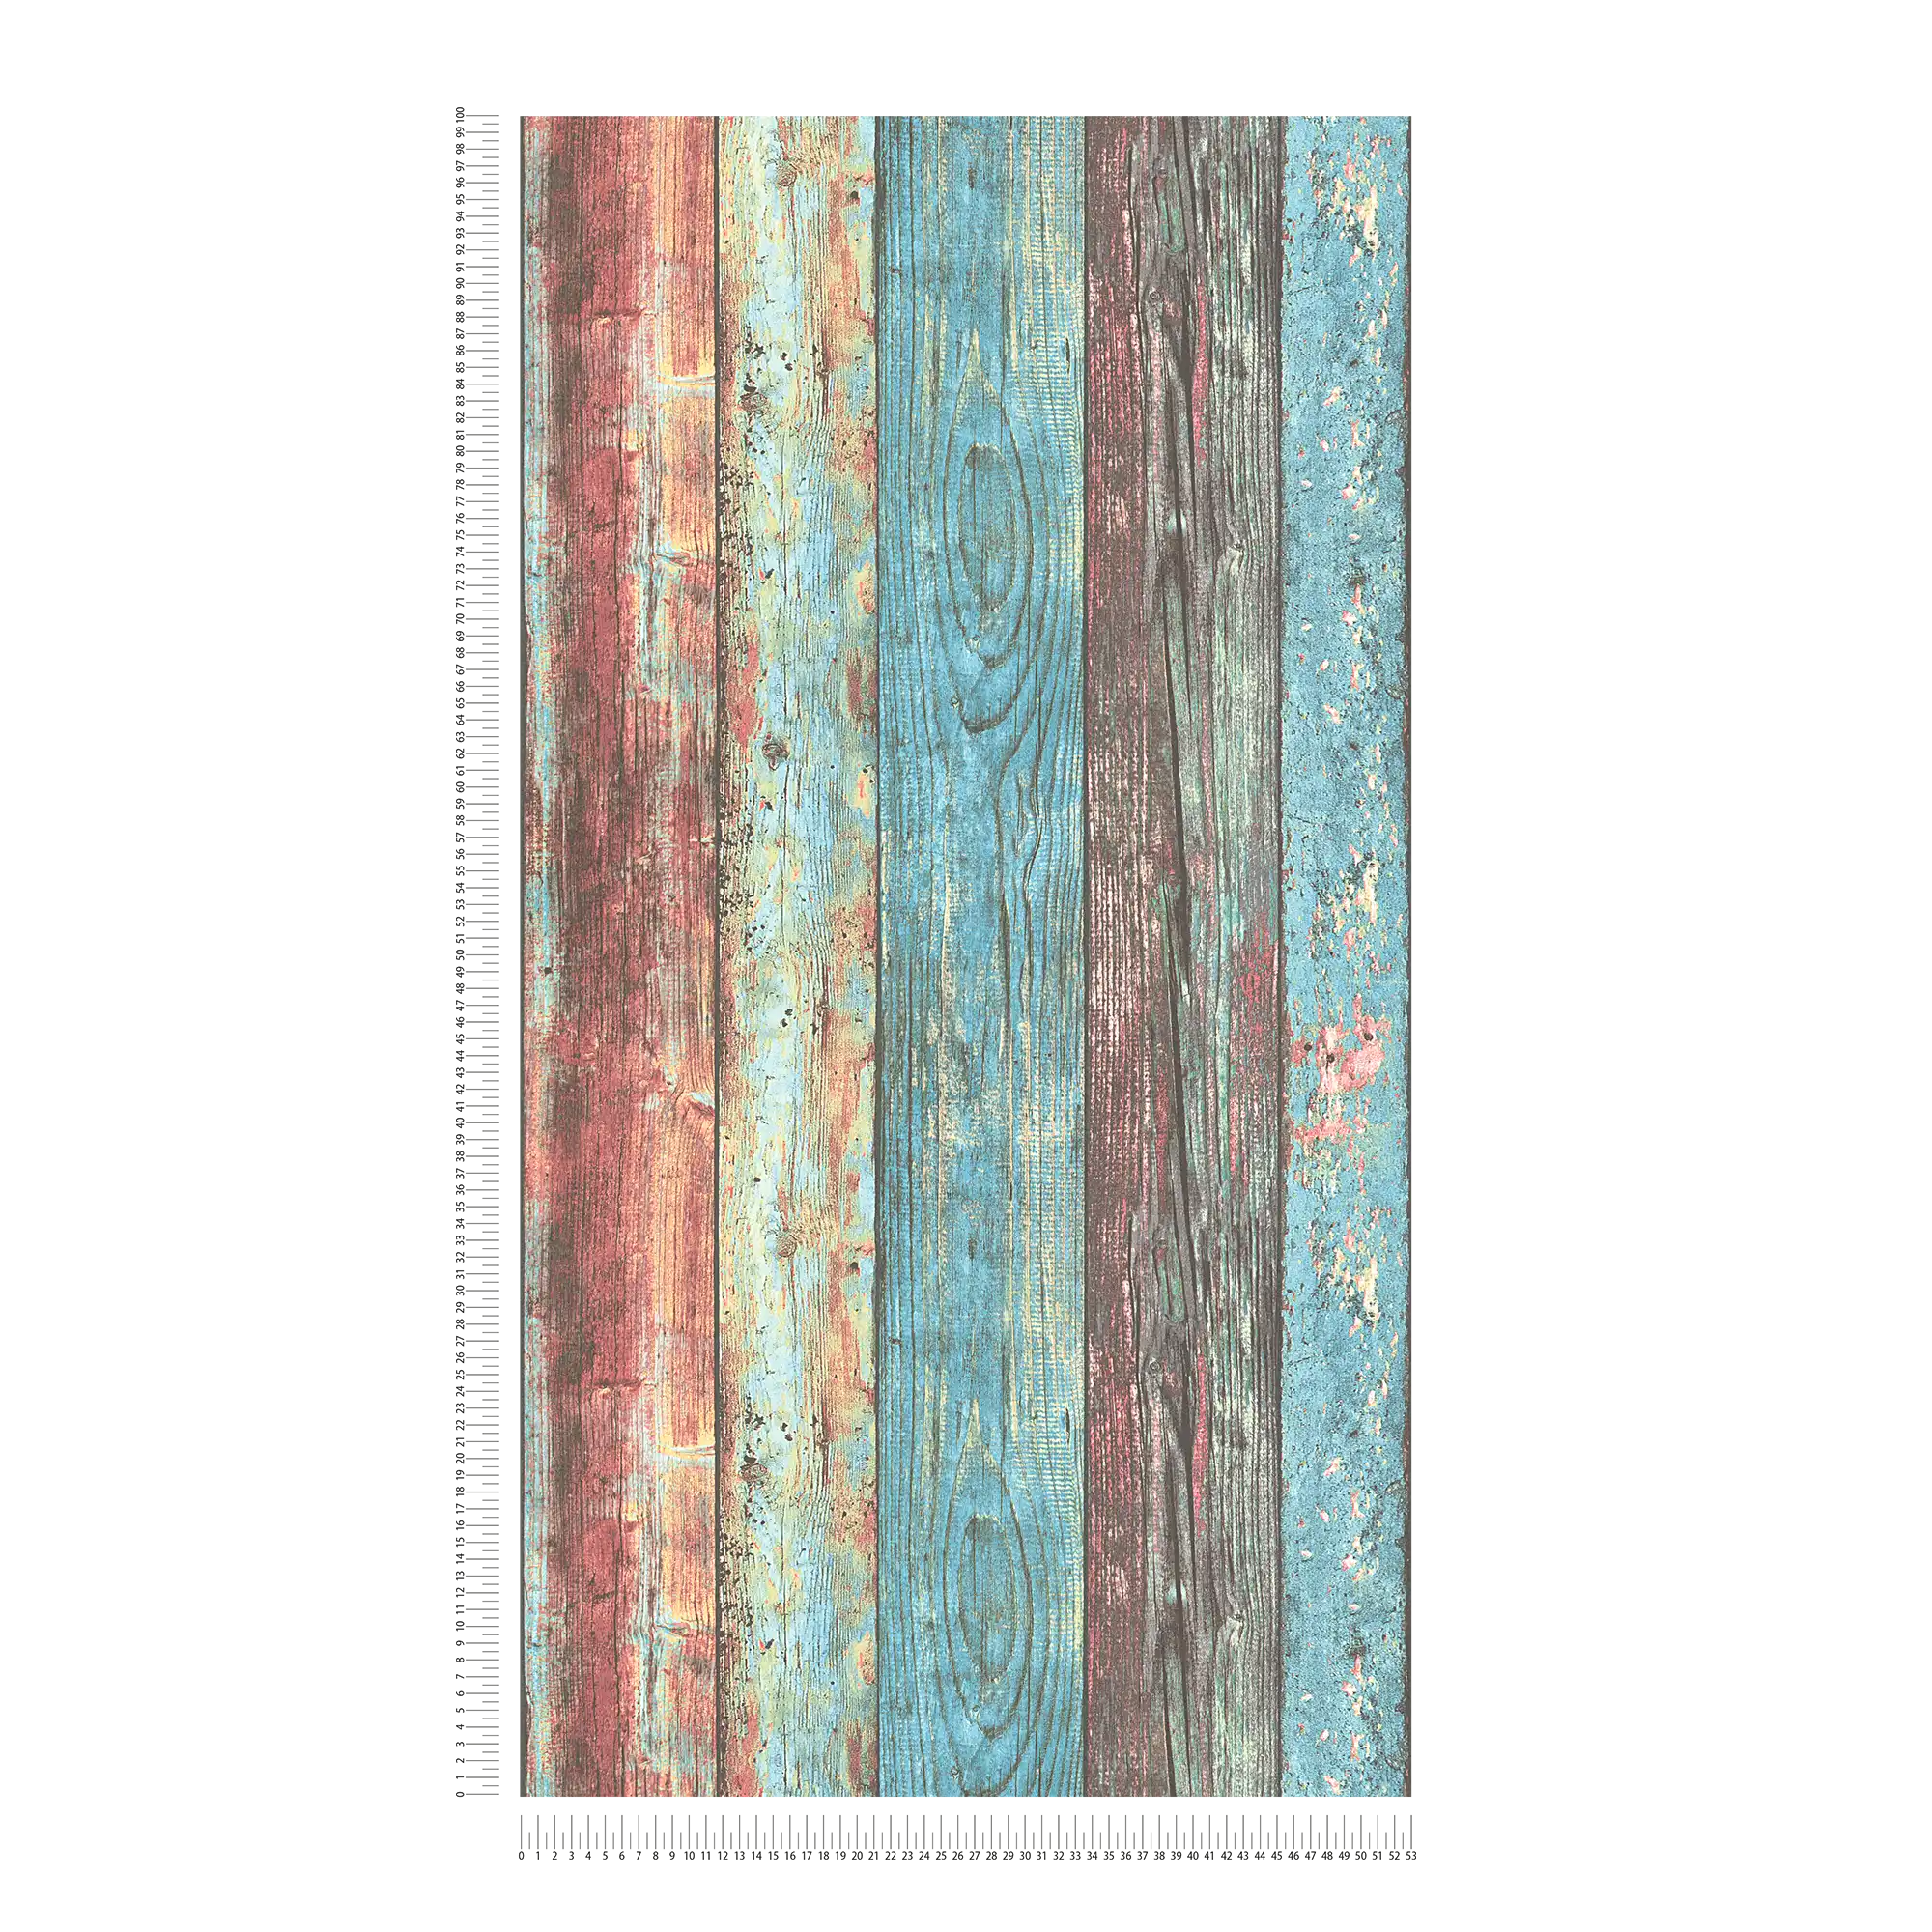             Kleurrijk houtbehang Shabby Chic stijl met bordpatroon - blauw, rood, bruin
        